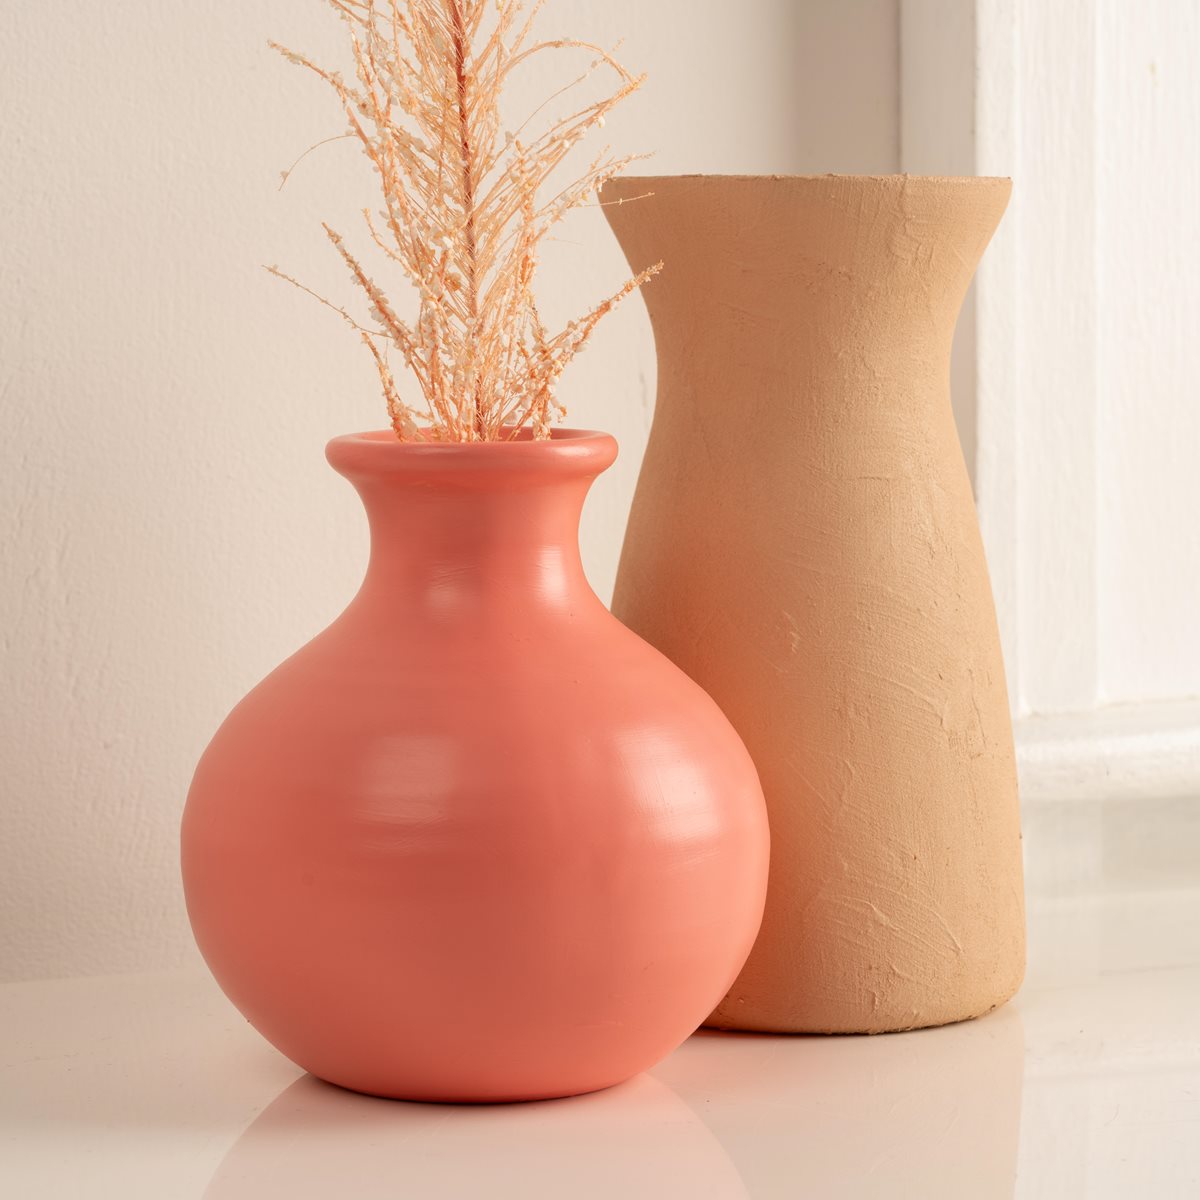 Peach Fuzz Upcycled Vases